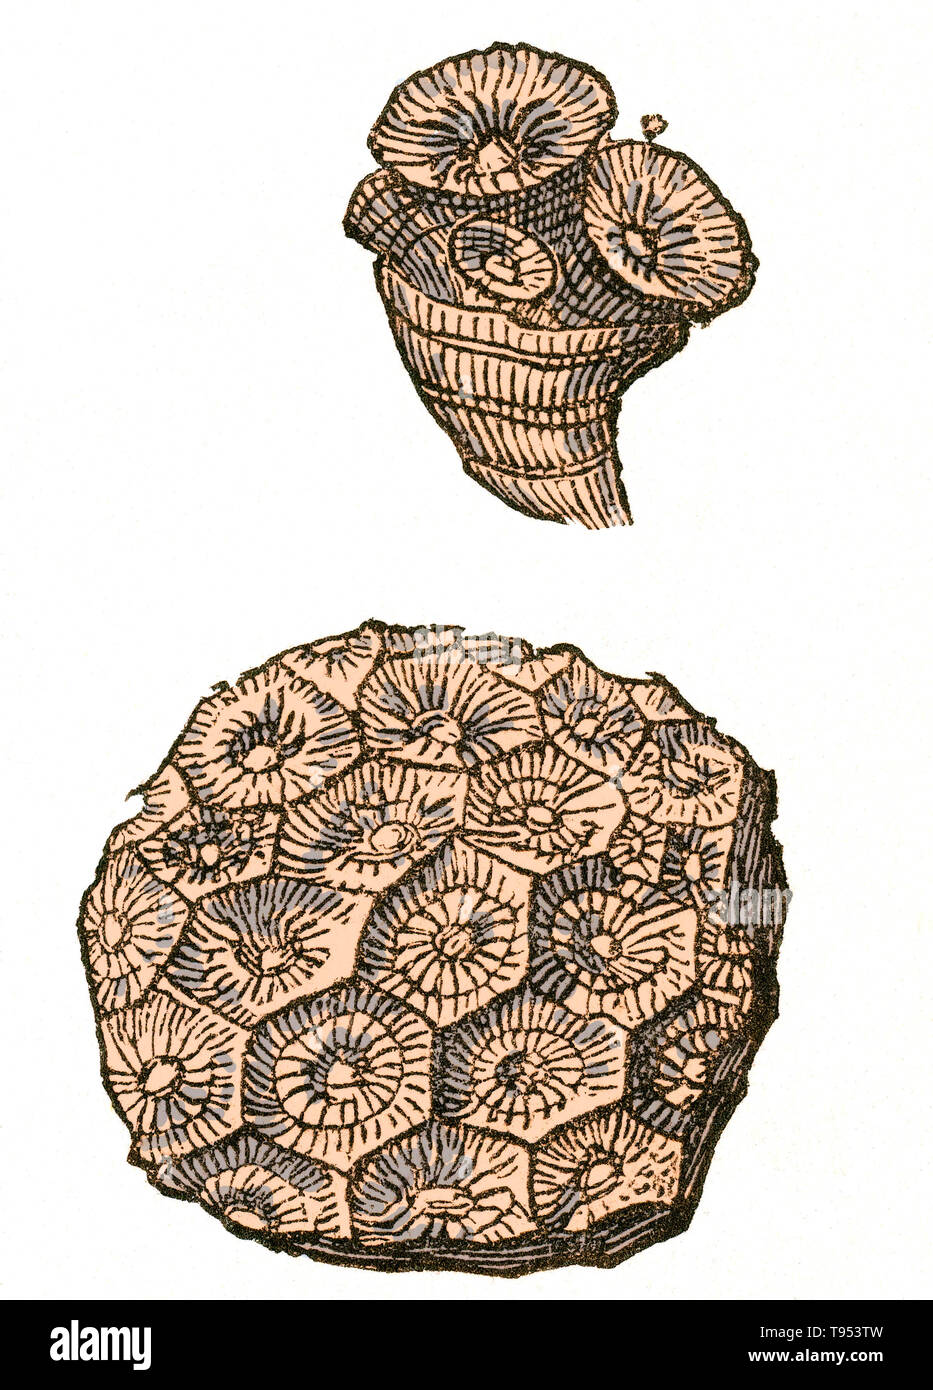 Fósil de una colonia de coral (Lonsdaleia rugose floriformis) que vivió durante el período carbonífero. Ilustración de Louis Figuier es el mundo antes del diluvio, 1867 edición estadounidense. Foto de stock